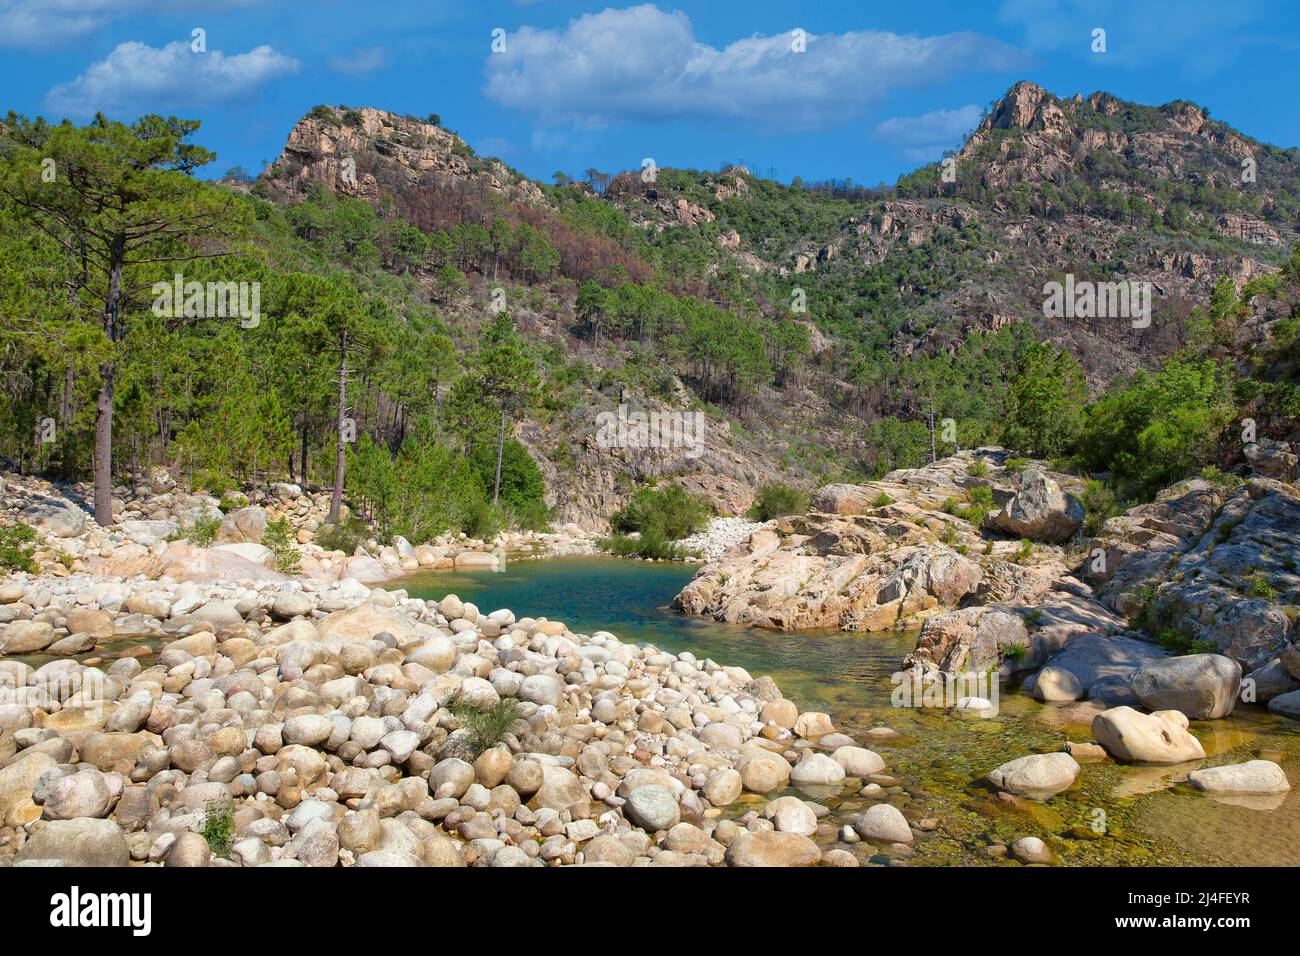 La rivière Solenzara avec ses magnifiques piscines naturelles dans l'eau cristalline au sud-est de l'île de Corse, en France. Banque D'Images